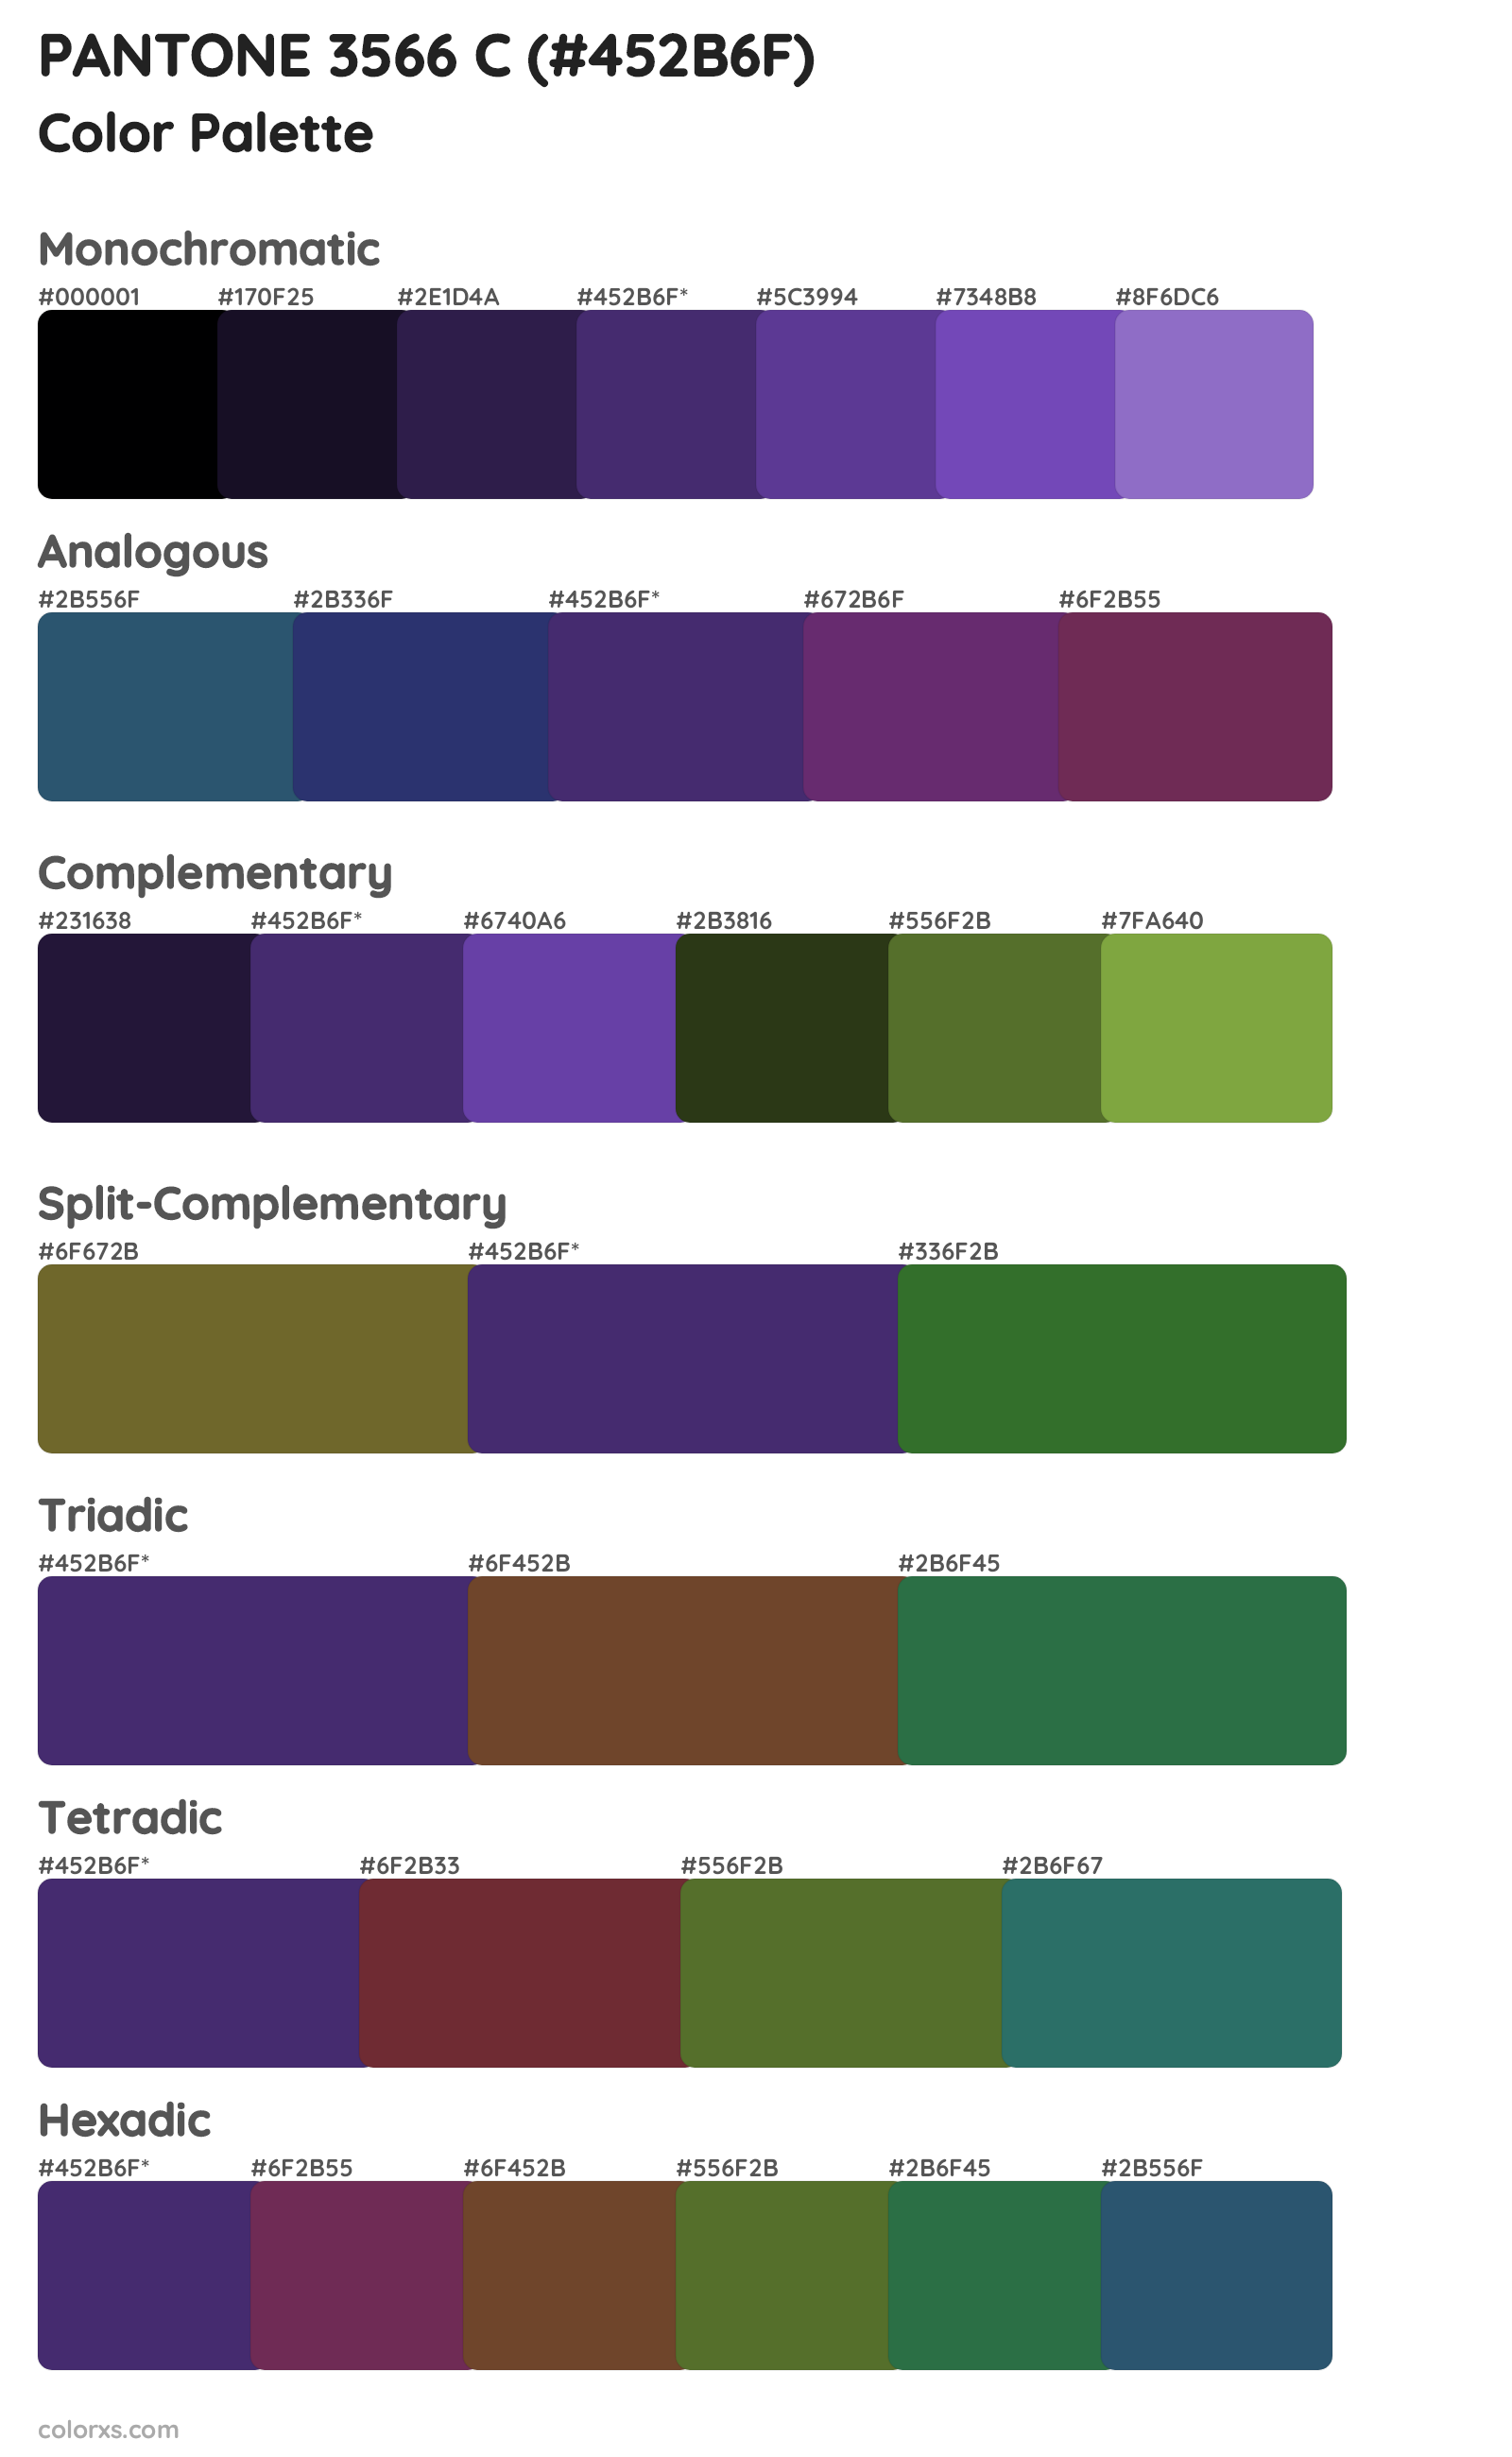 PANTONE 3566 C Color Scheme Palettes